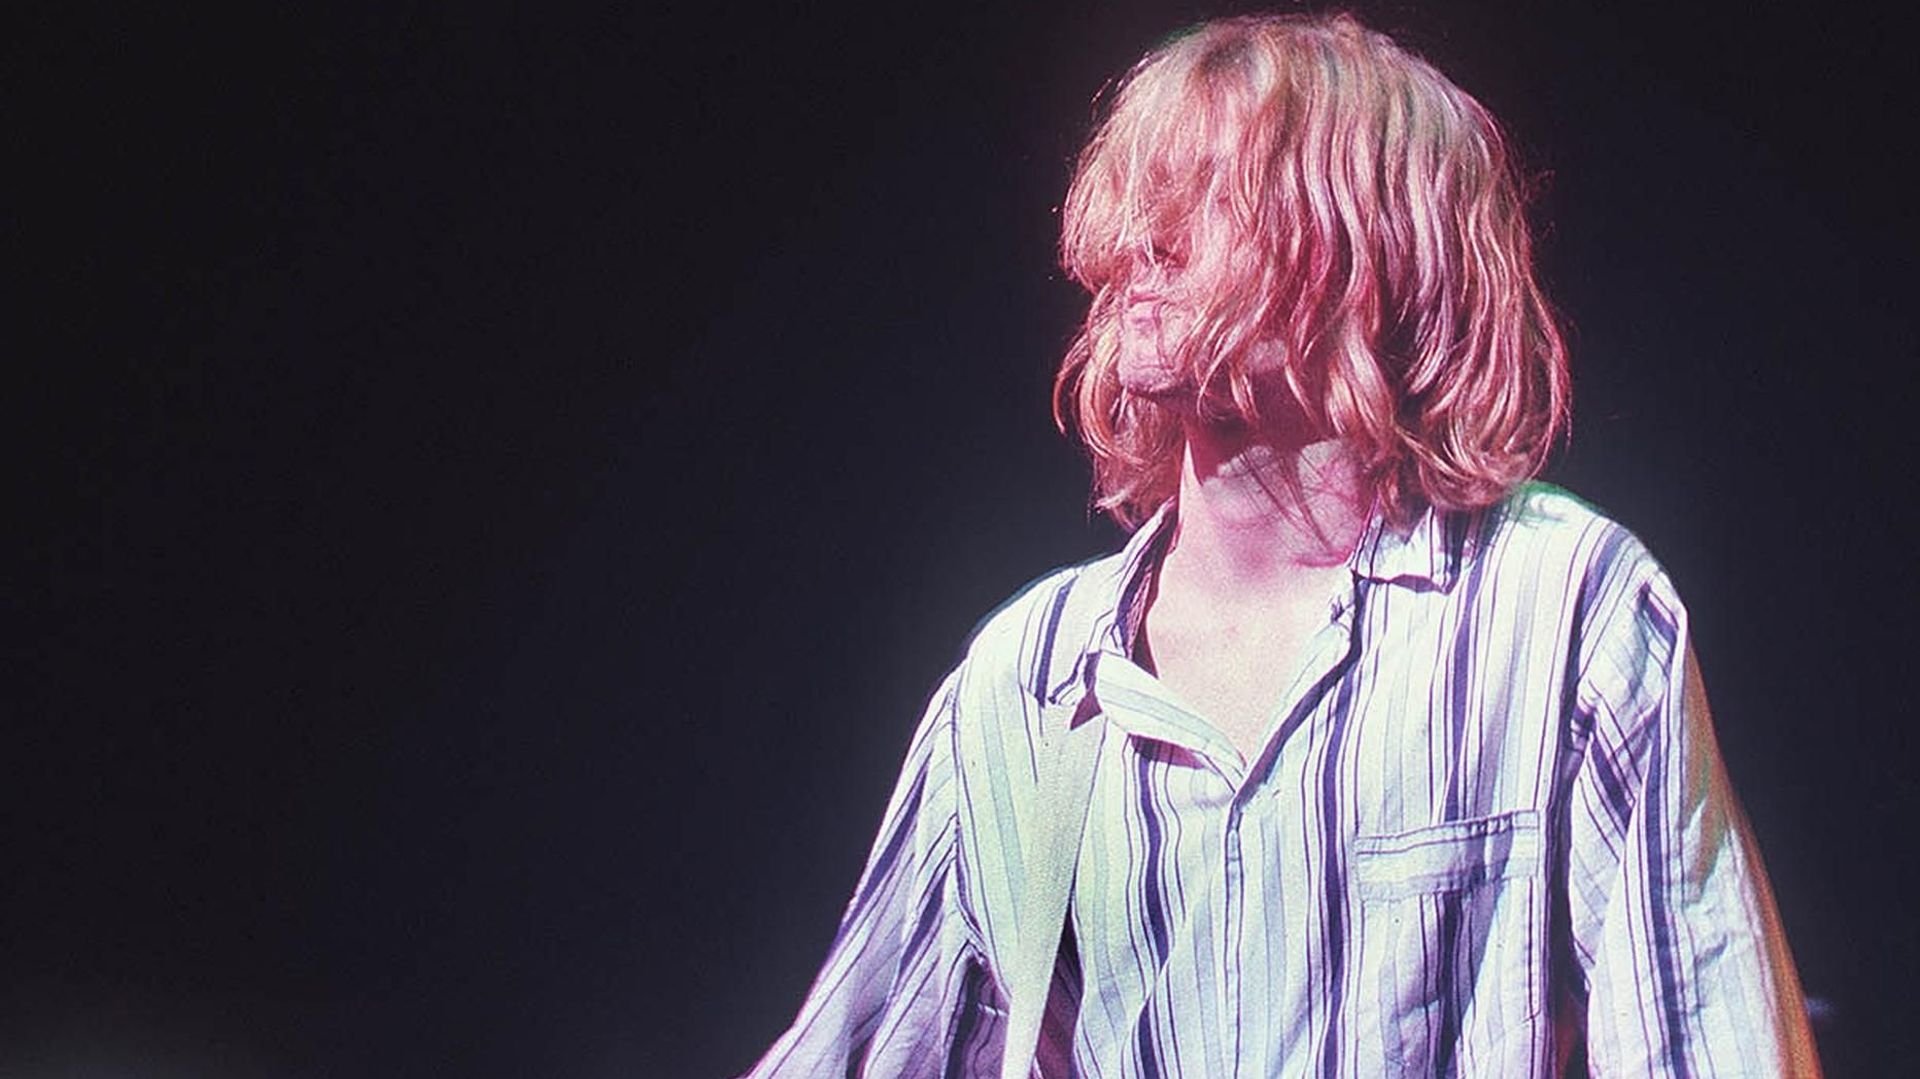 L'album d'outre-tombe de Kurt Cobain sortira le 6 novembre